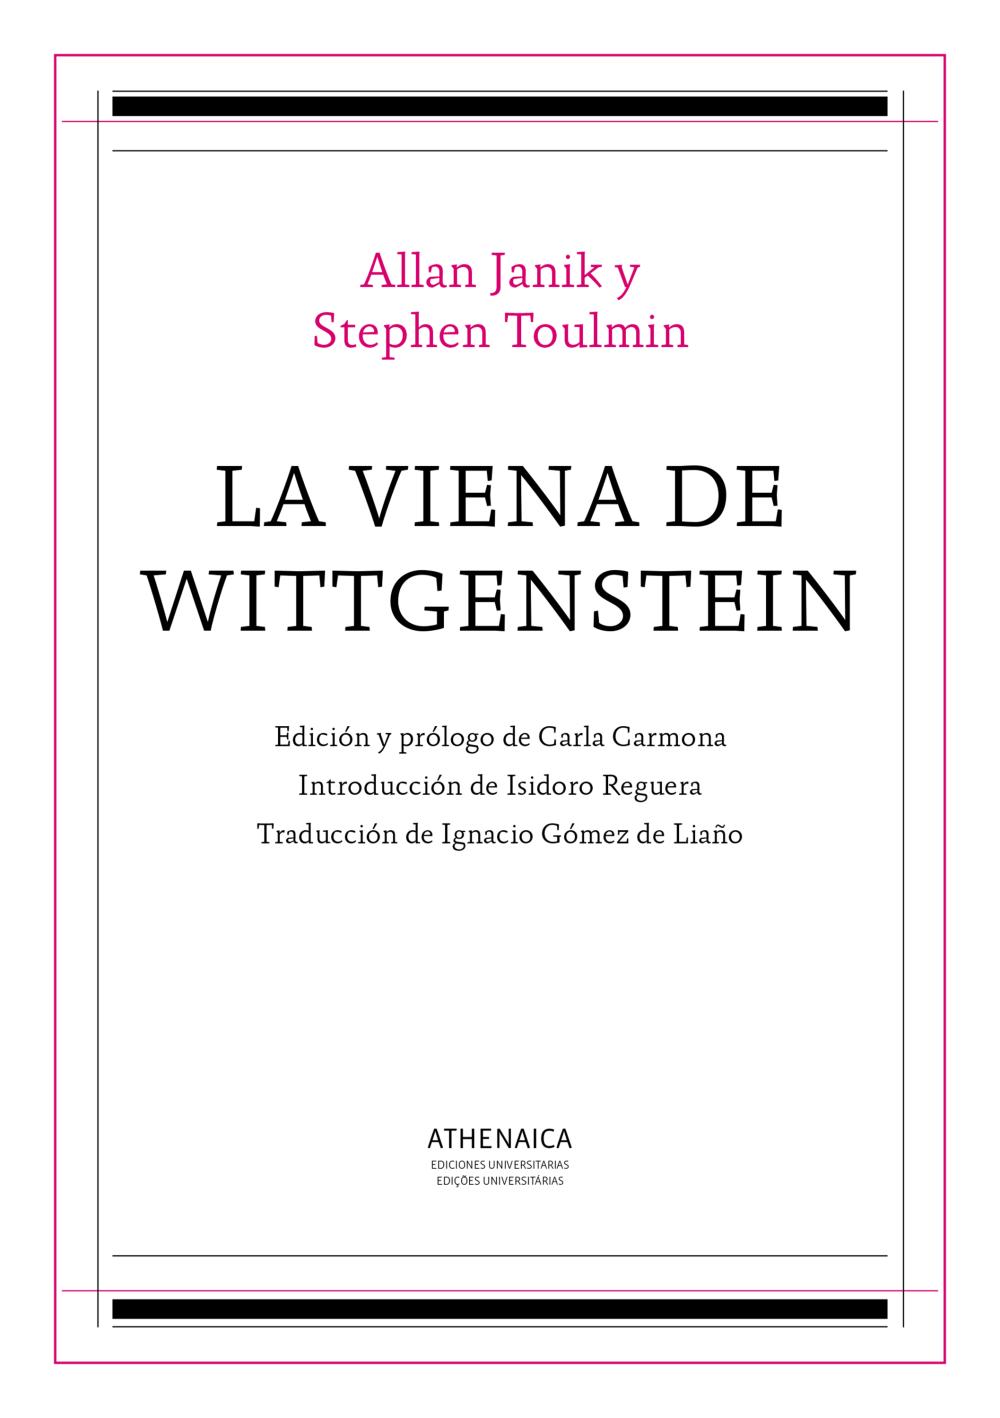 La Viena de Wittgenstein